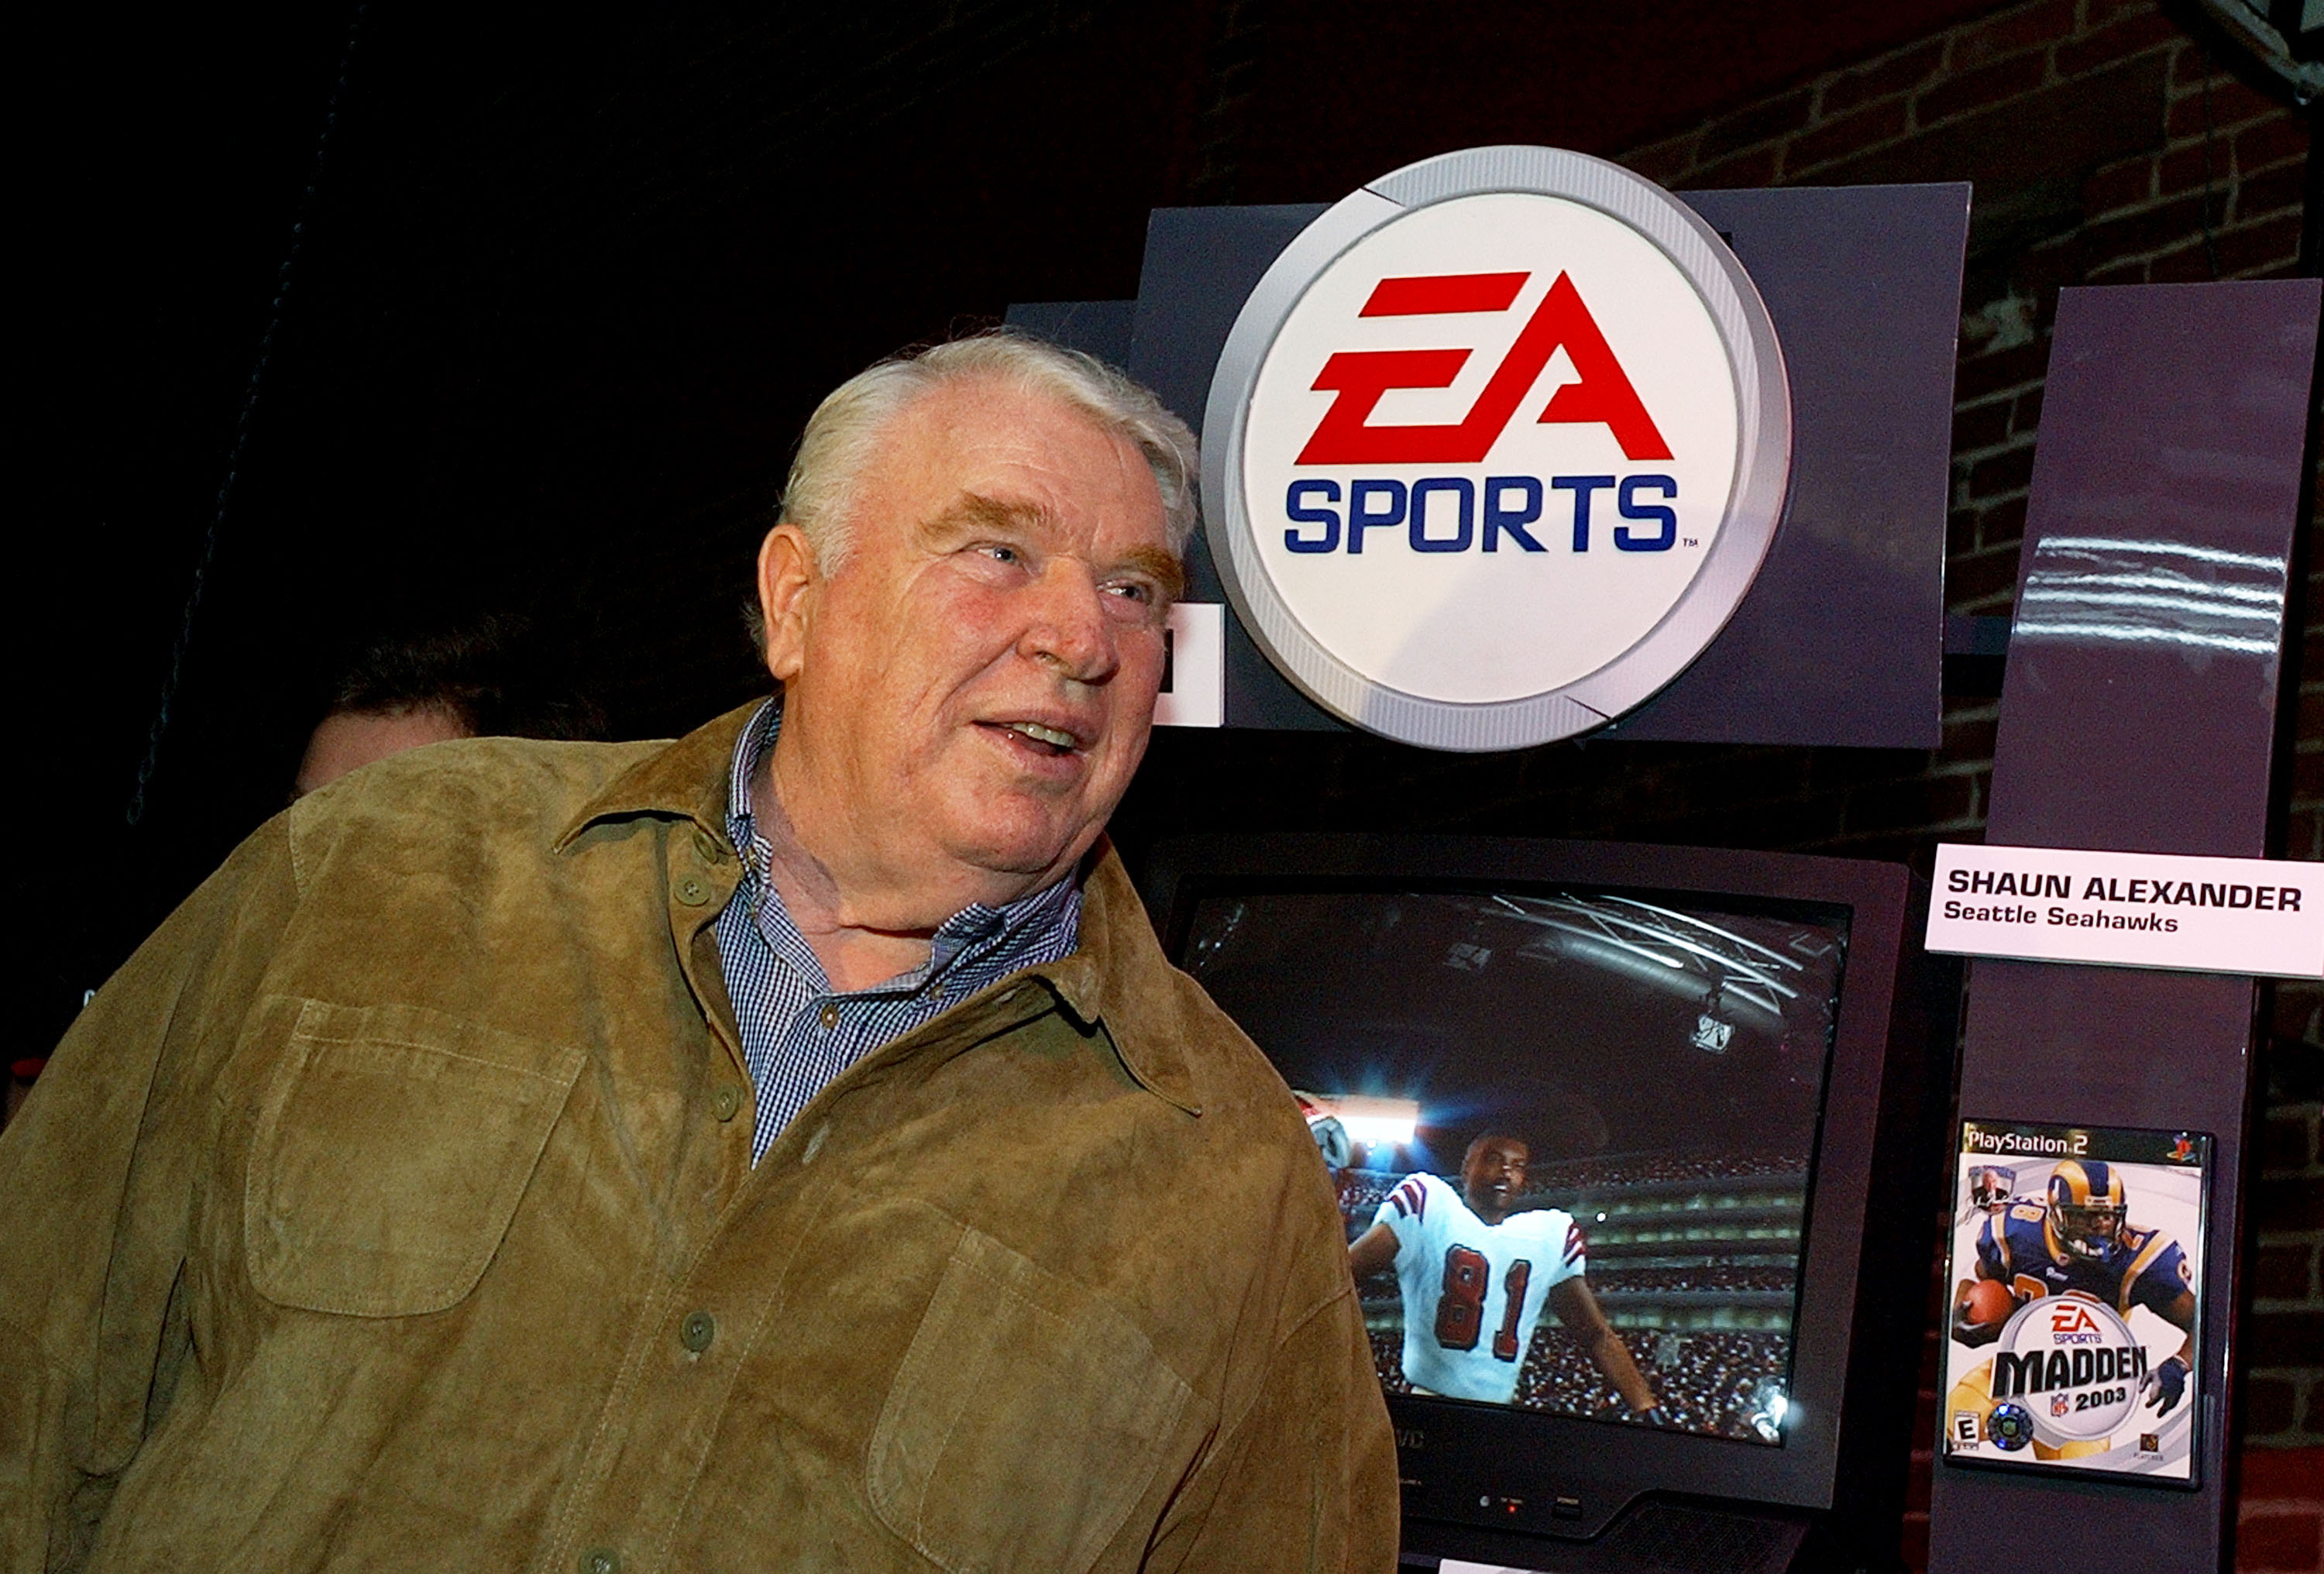 John Madden and the EA Sports logo.